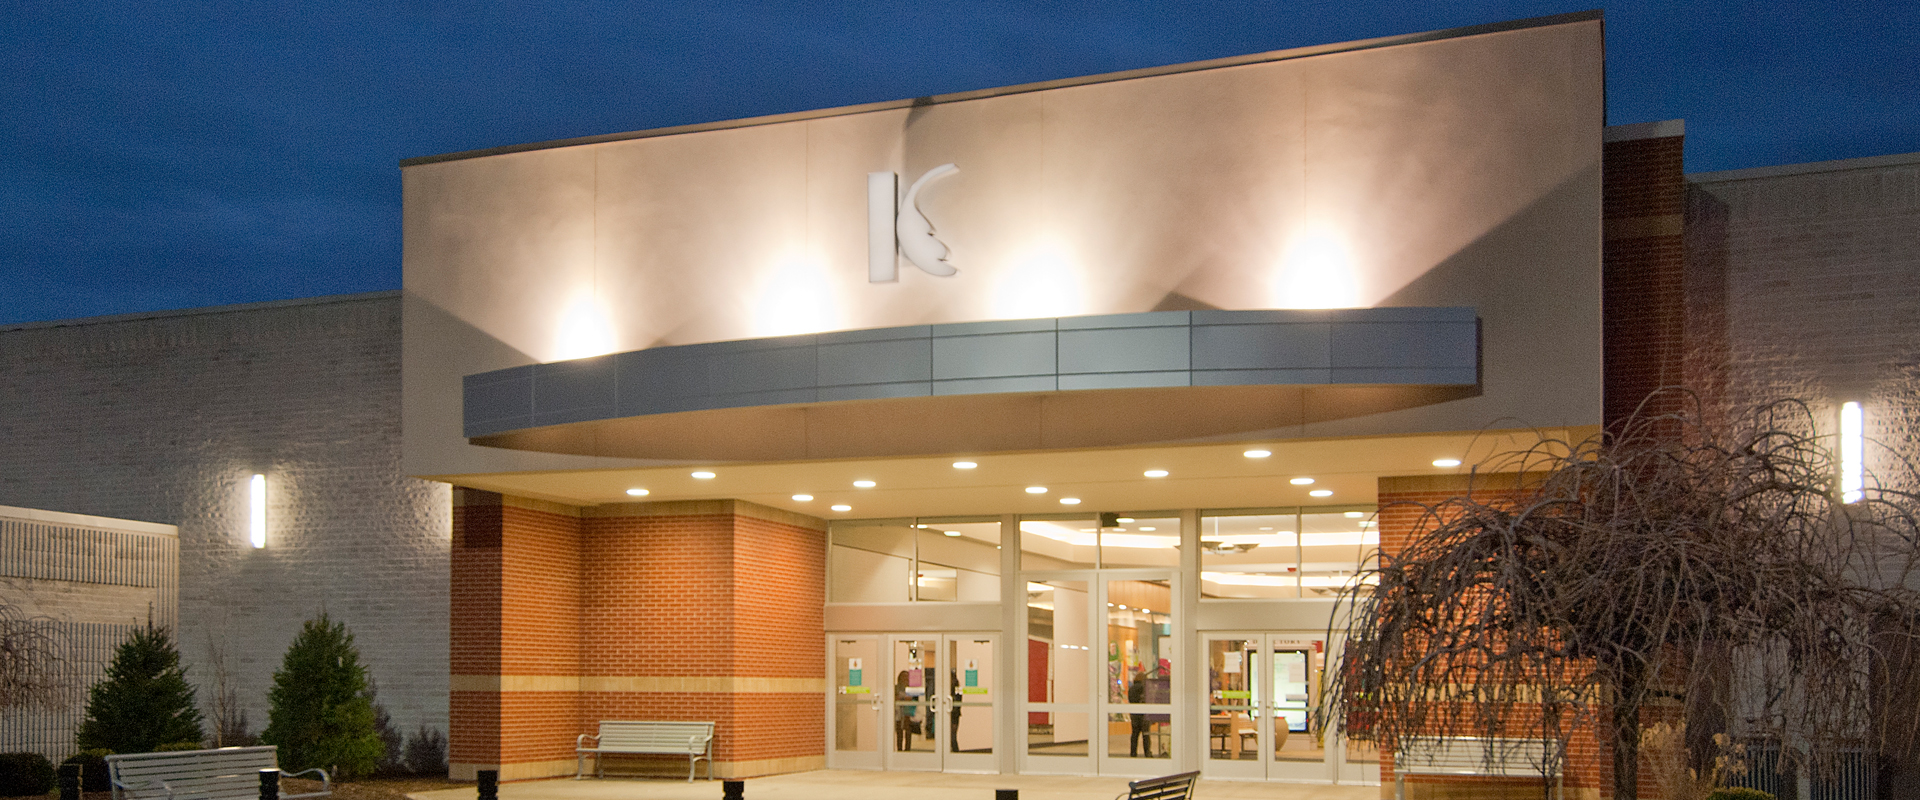 Kentucky Oaks Mall First a “refresh” then a revitalization CAFARO